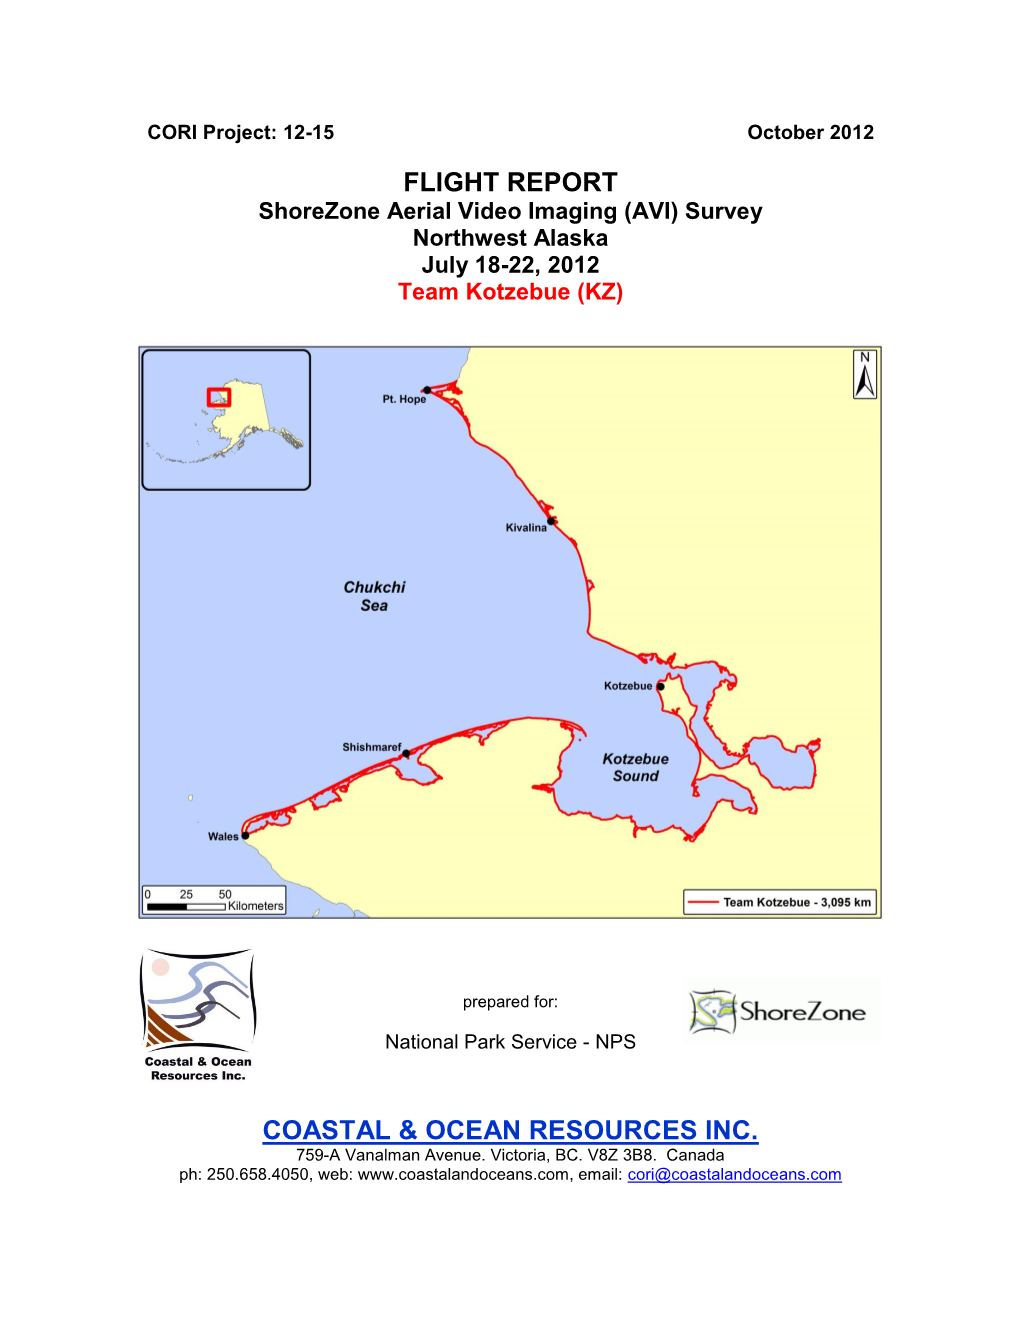 Flight Report Coastal & Ocean Resources Inc